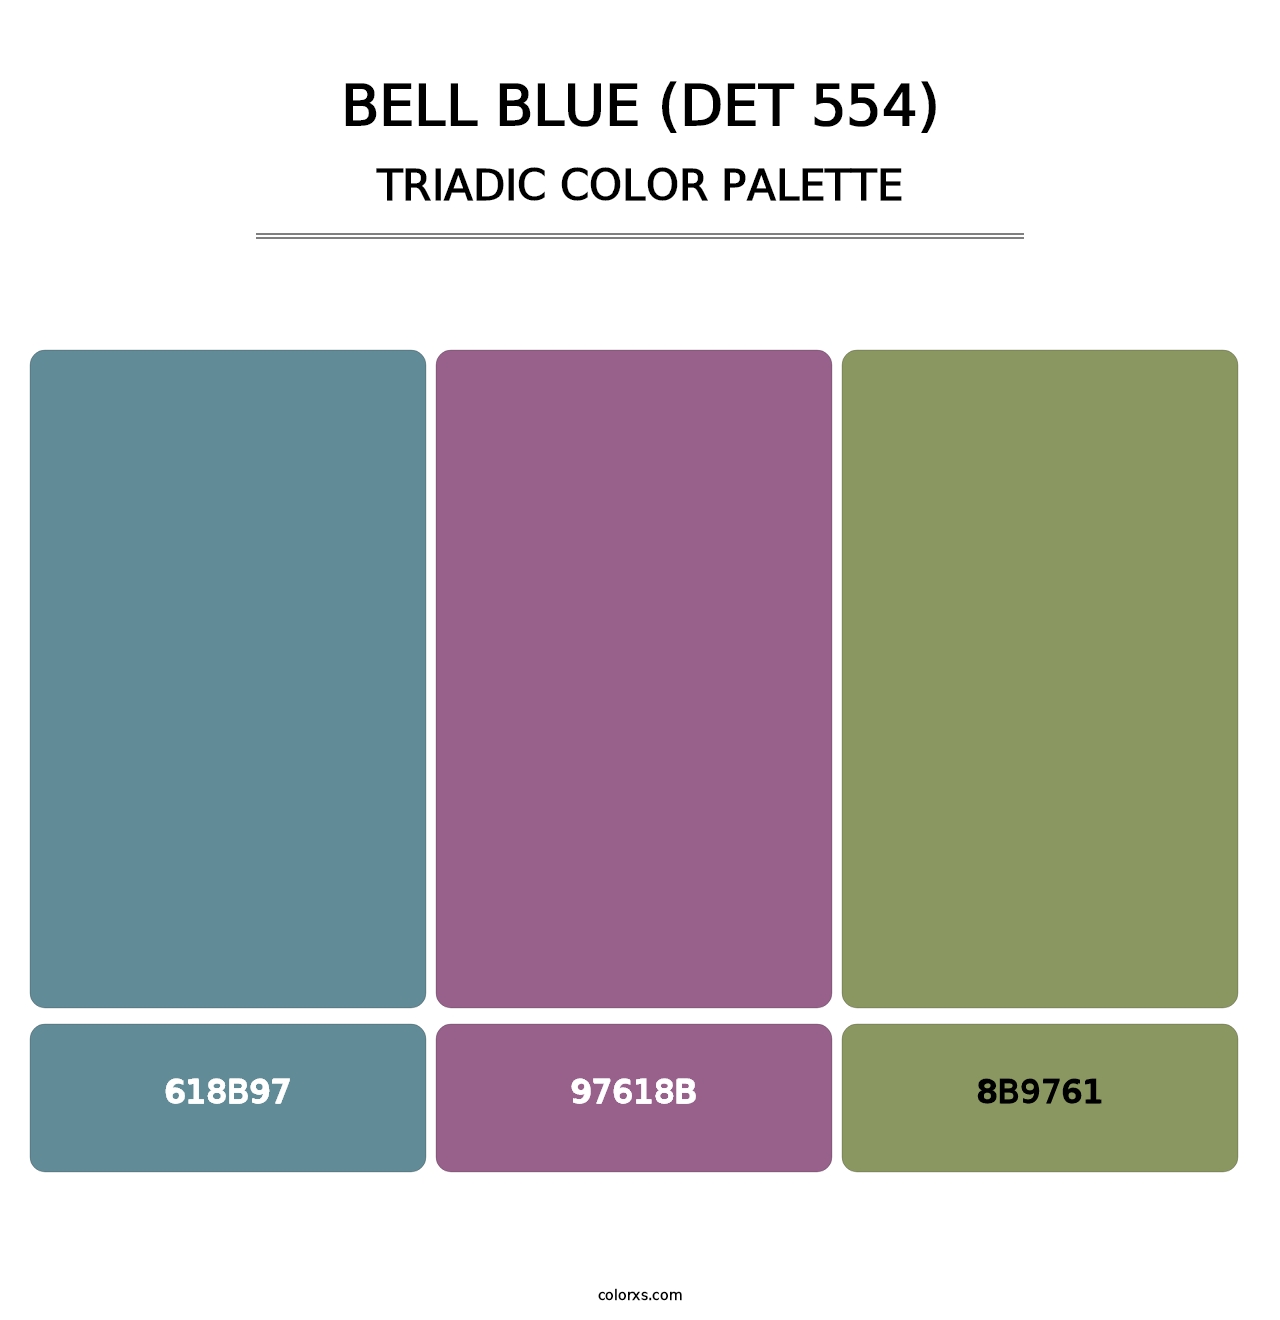 Bell Blue (DET 554) - Triadic Color Palette